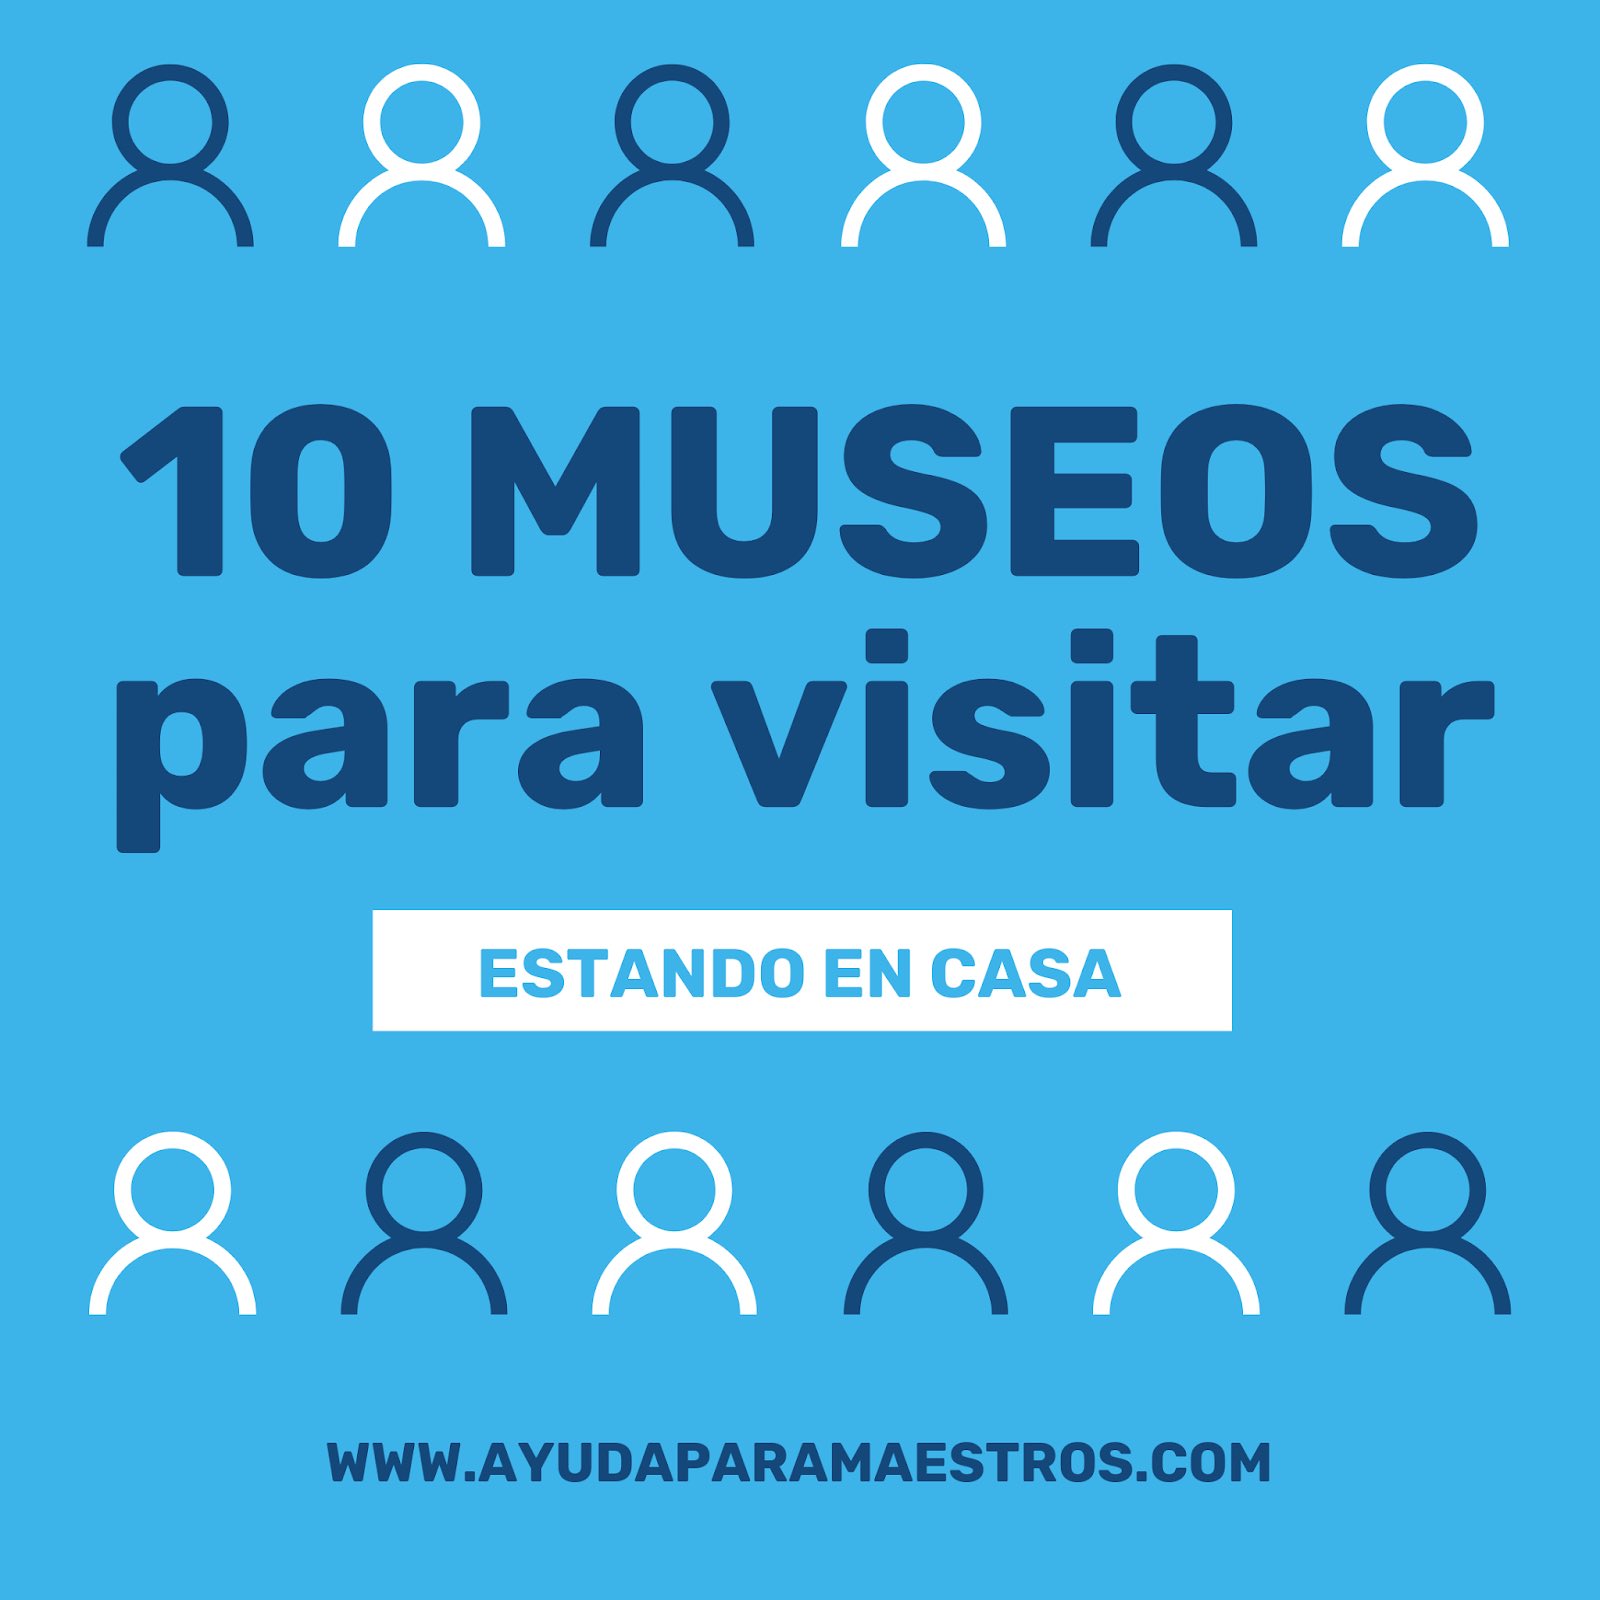 10 MUSEOS PARA VISITAR